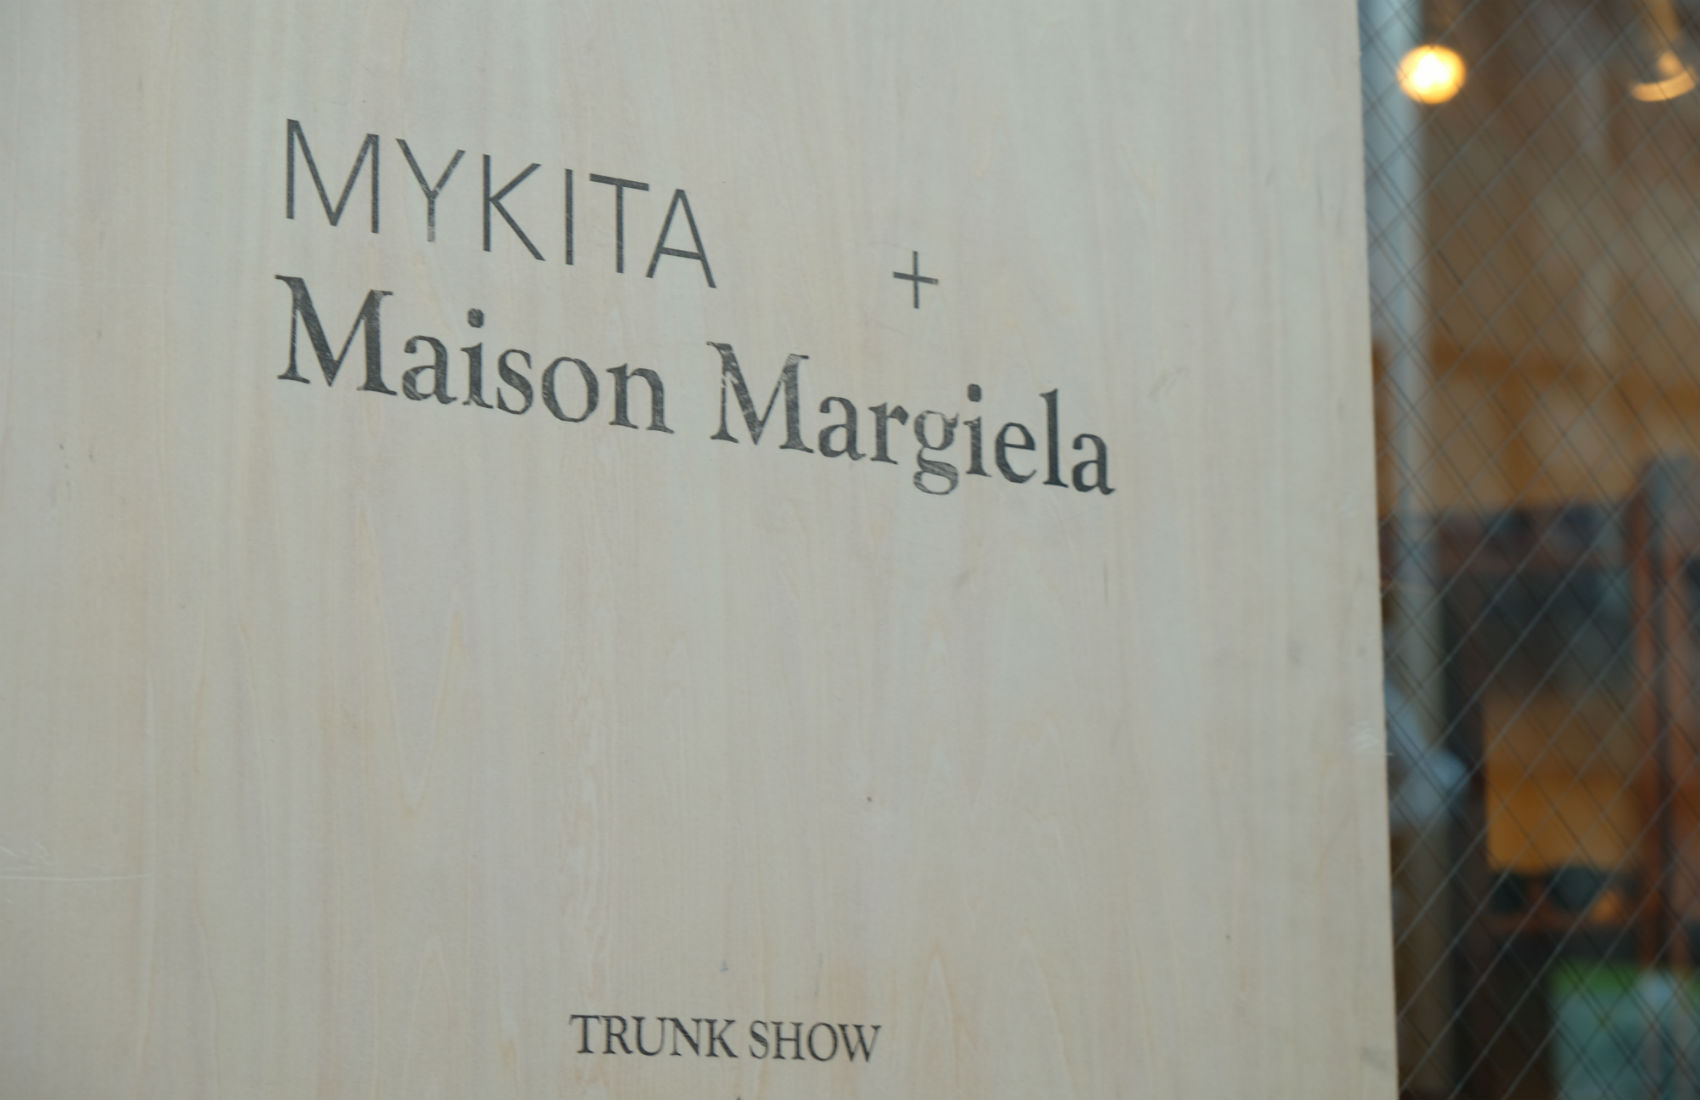 MYKITA + Maison Margiela Trunk-Show